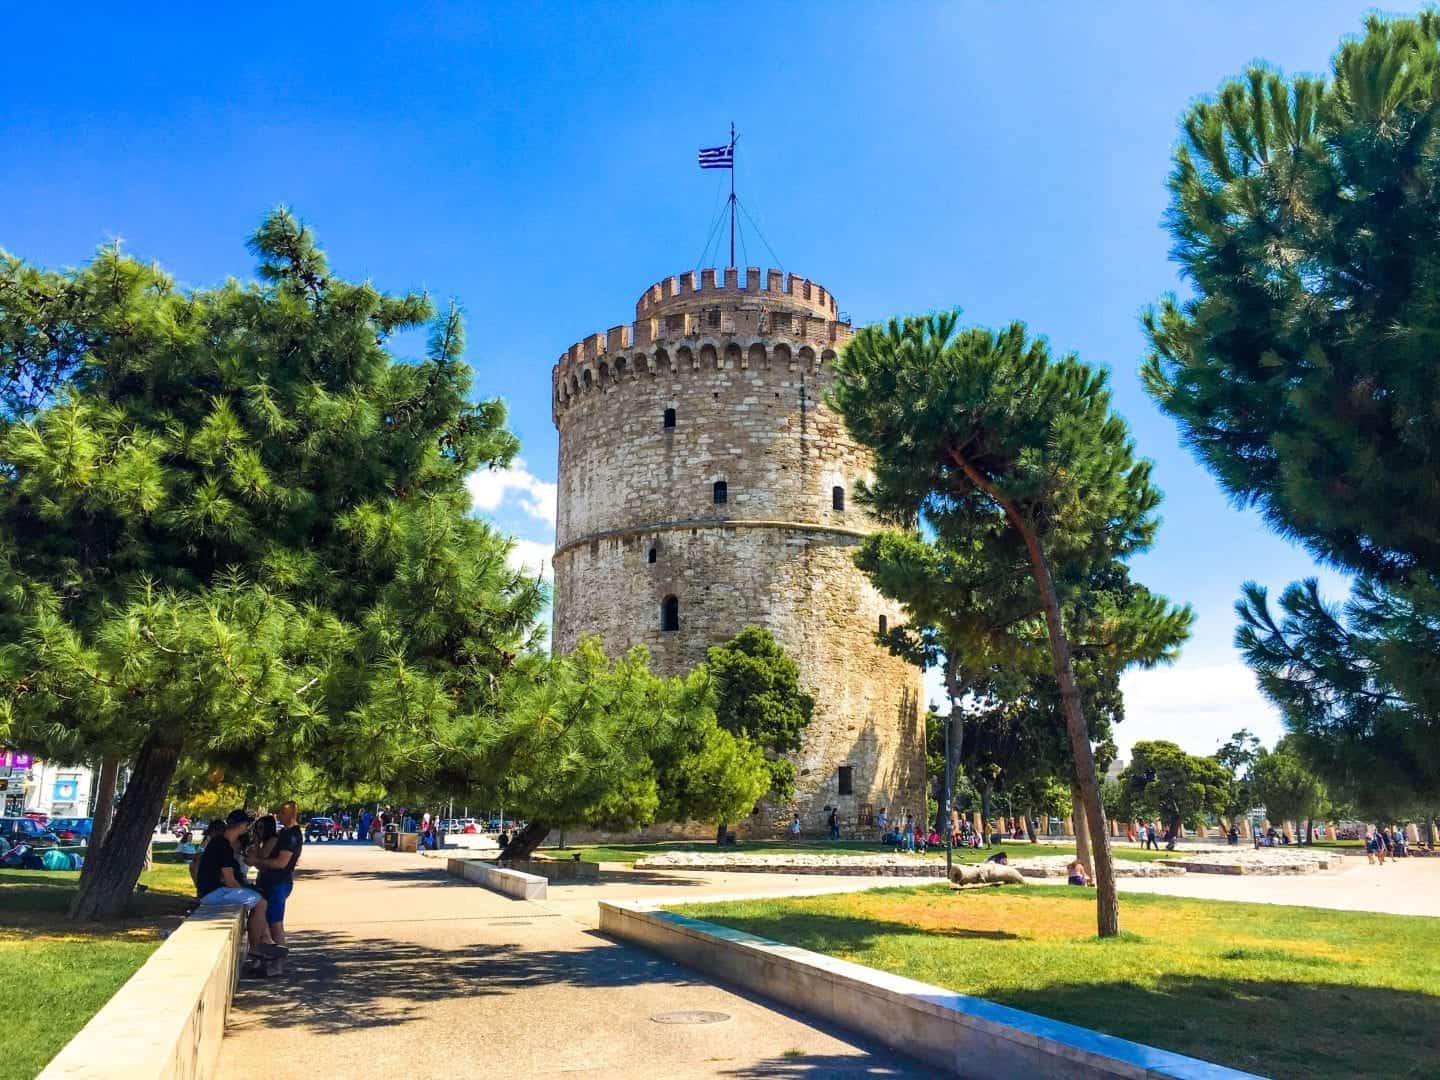 Encuentre todas las mejores atracciones en Grecia, alta torre circular de piedra en un parque con áreas de césped y árboles con gente sentada y caminando